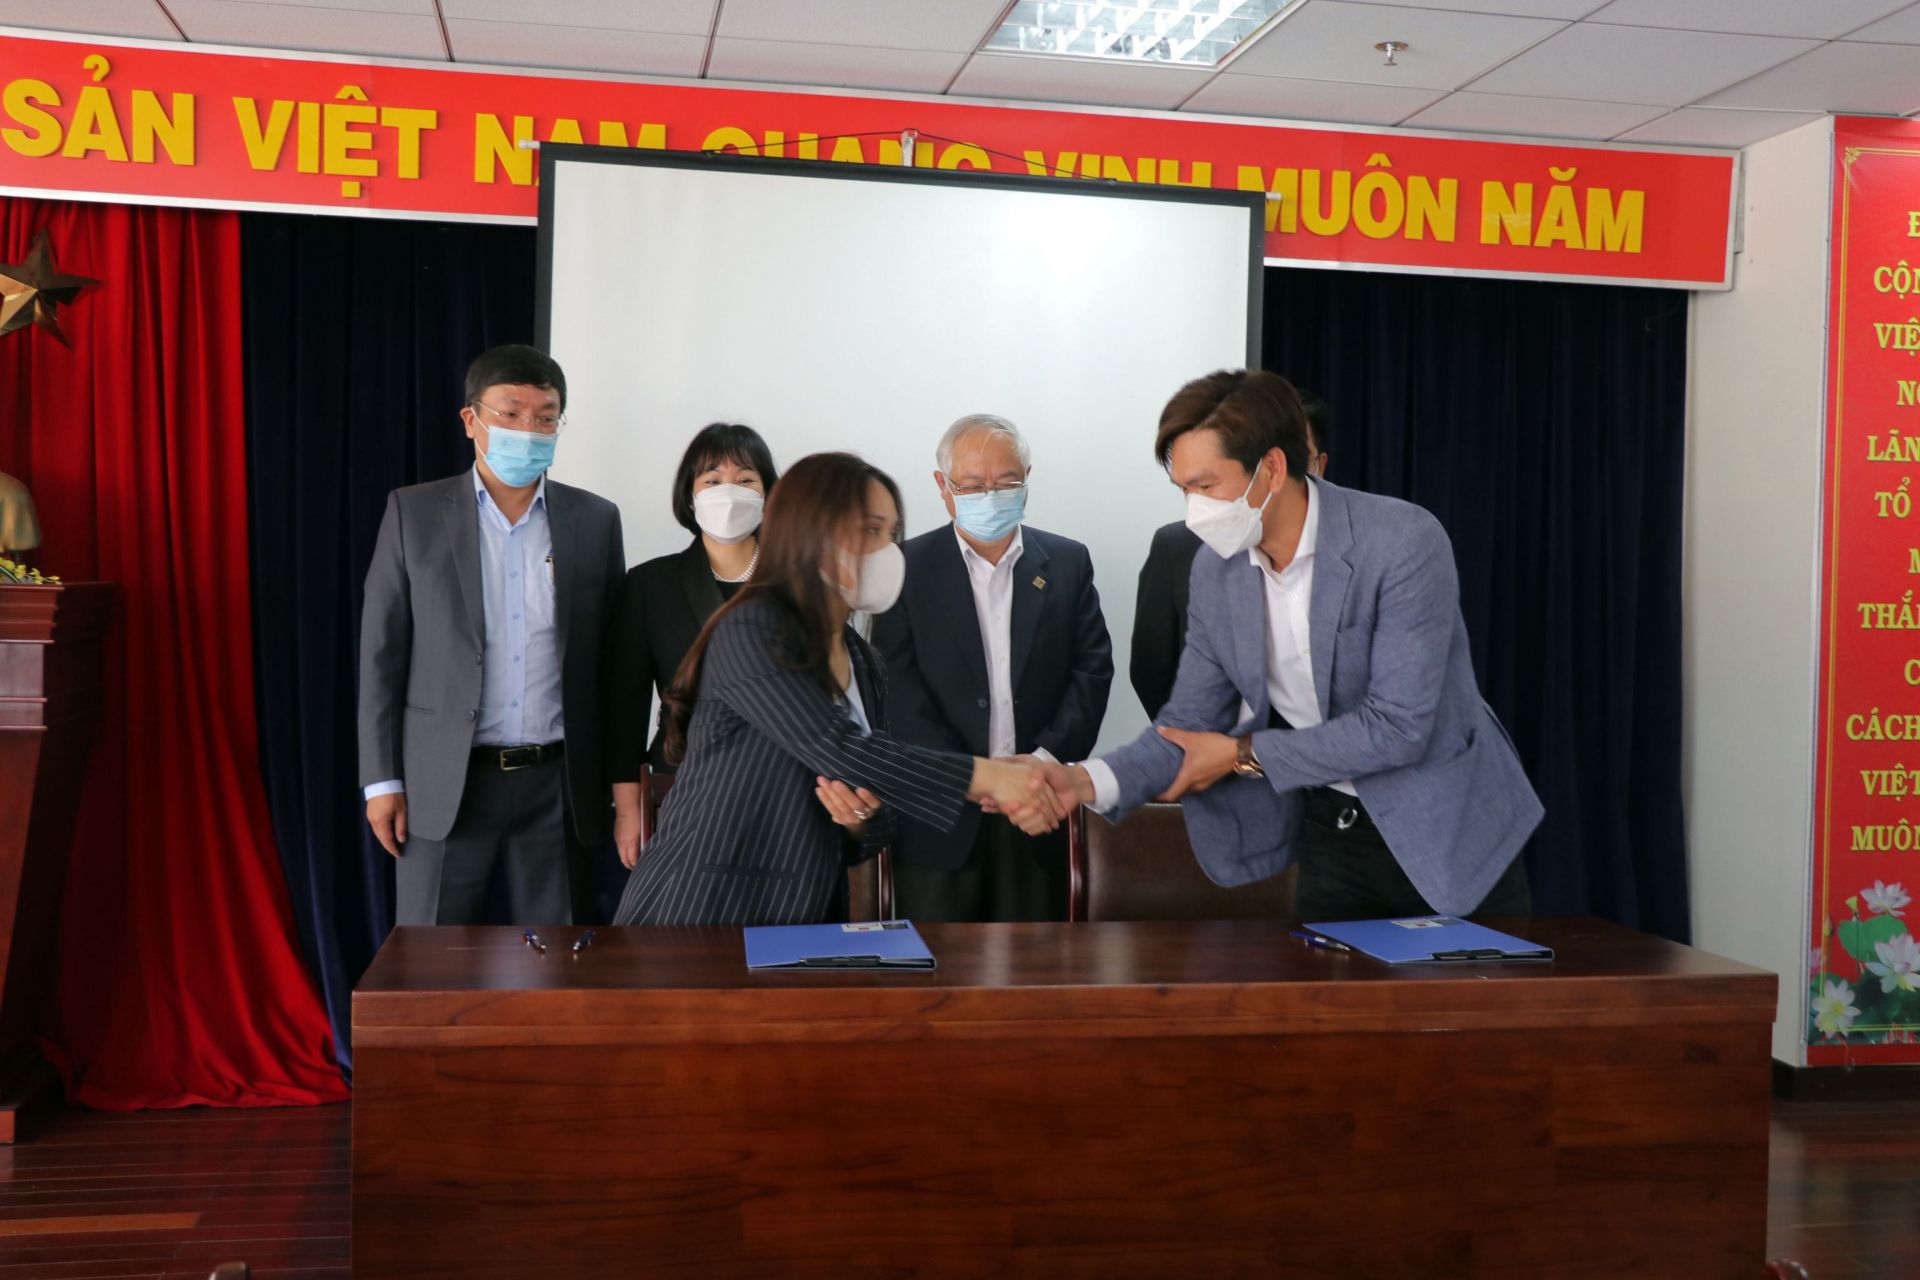 Ảnh minh họa15 doanh nghiệp, hợp tác xã, hộ sản xuất của tỉnh Lâm Đồng ký kết biên bản hợp tác với Công ty cổ phần Dịch vụ Thương mại tổng hợp WinCommerce.